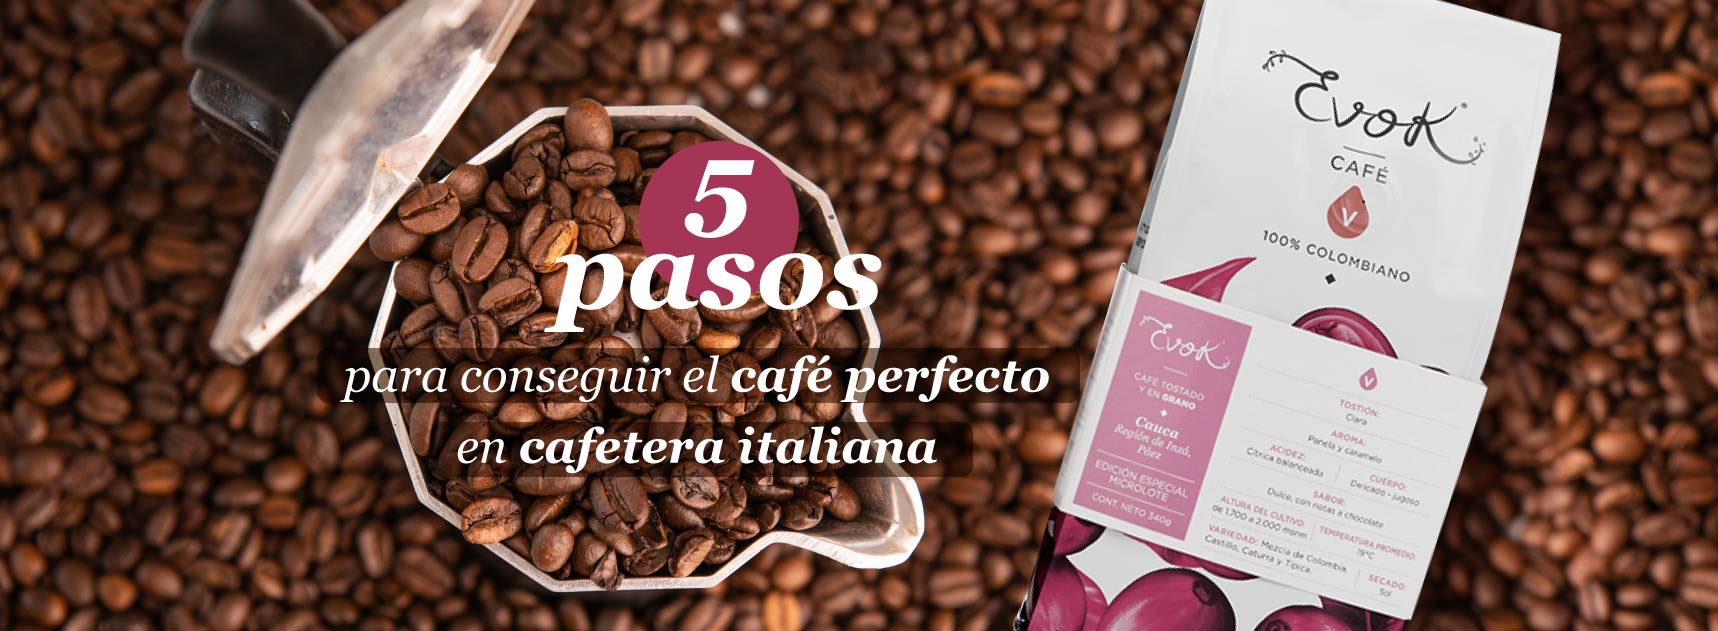 Cómo hacer café en cafetera italiana en 5 pasos